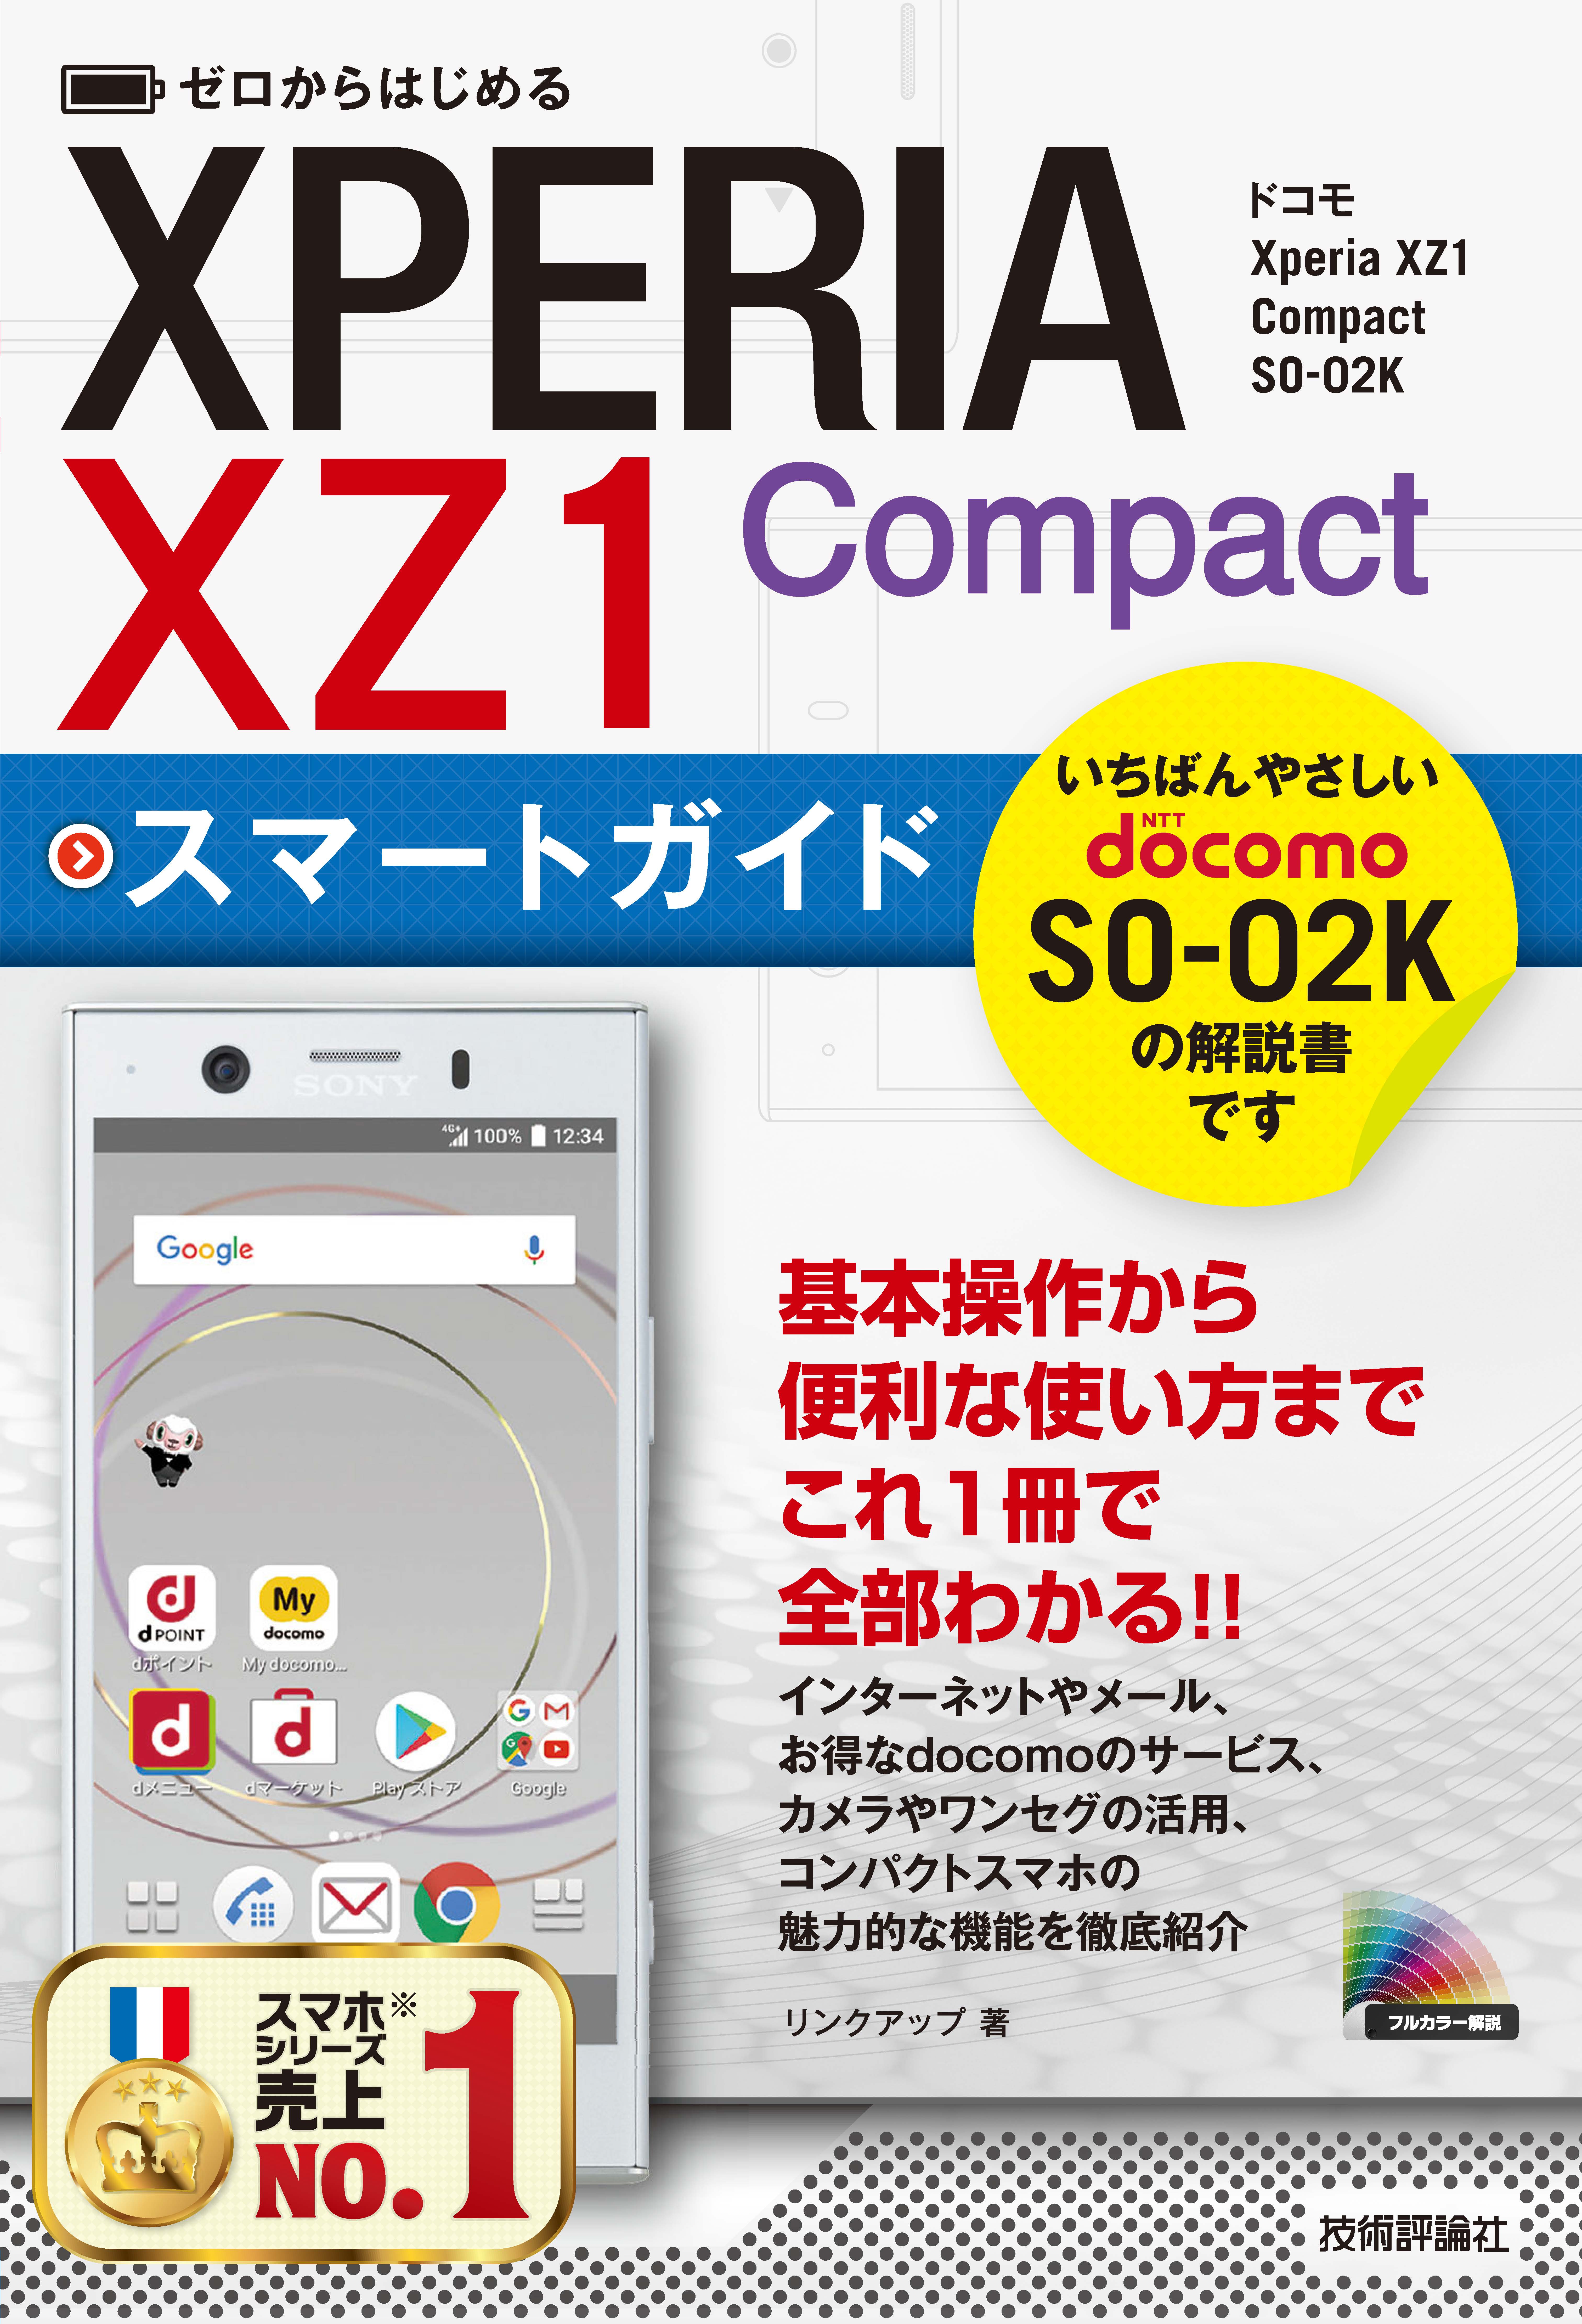 ゼロからはじめる ドコモ Xperia XZ1 Compact SO-02K スマートガイド ...